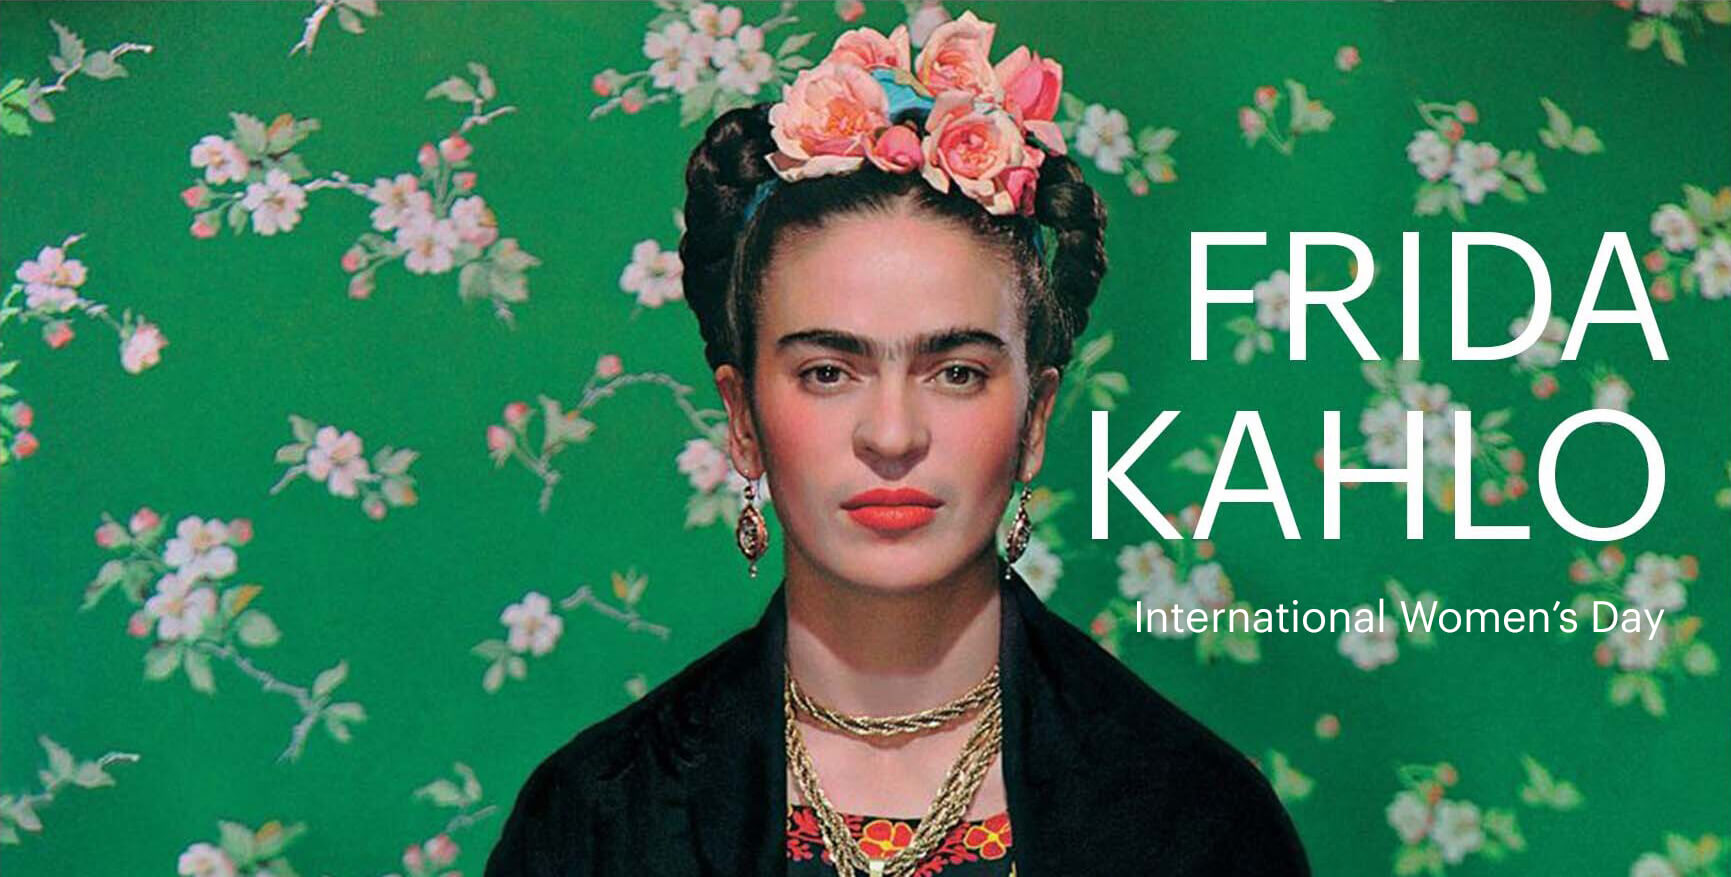 Mezinárodní den žen | EAT in kino! Frida Kahlo, 08/03